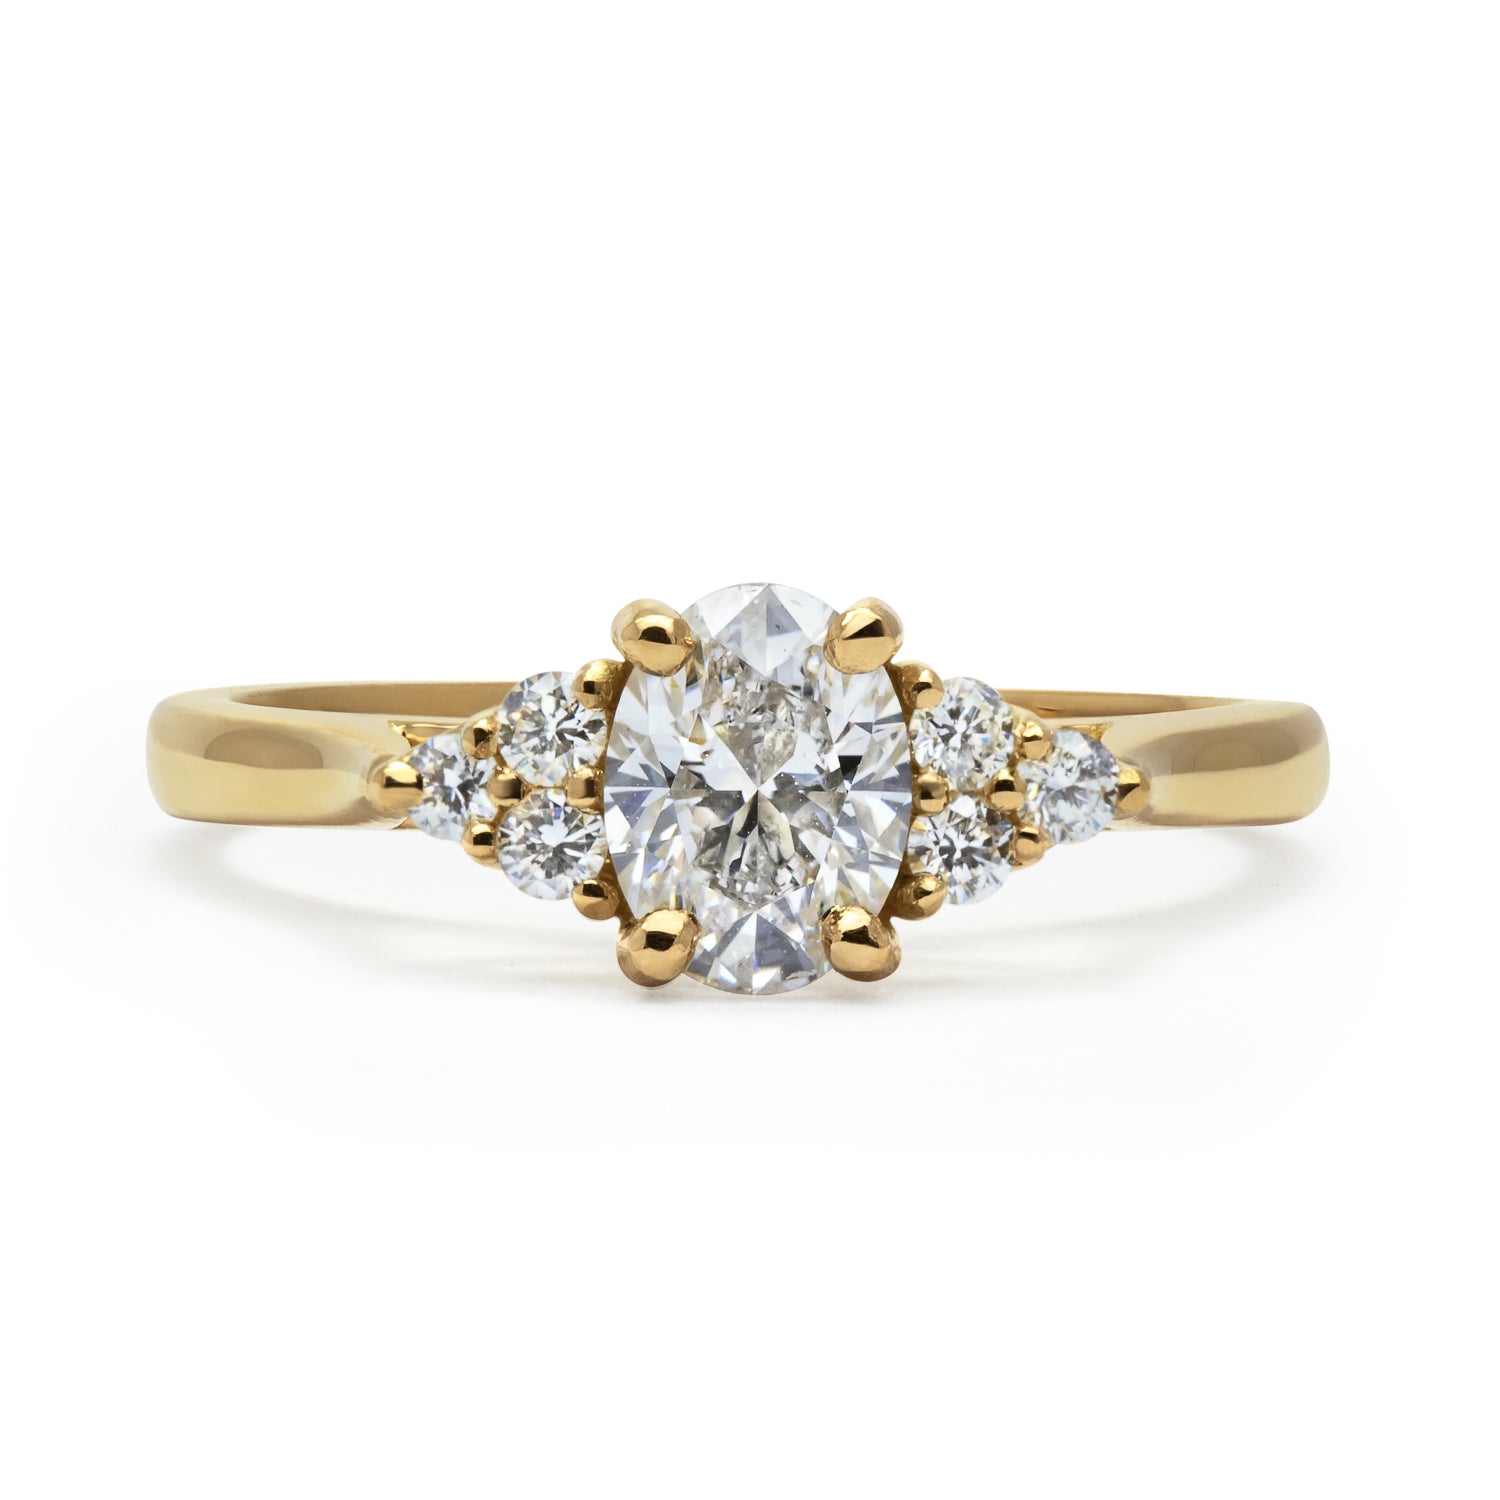 Bespoke Lab Grown Diamond Engagement Ring